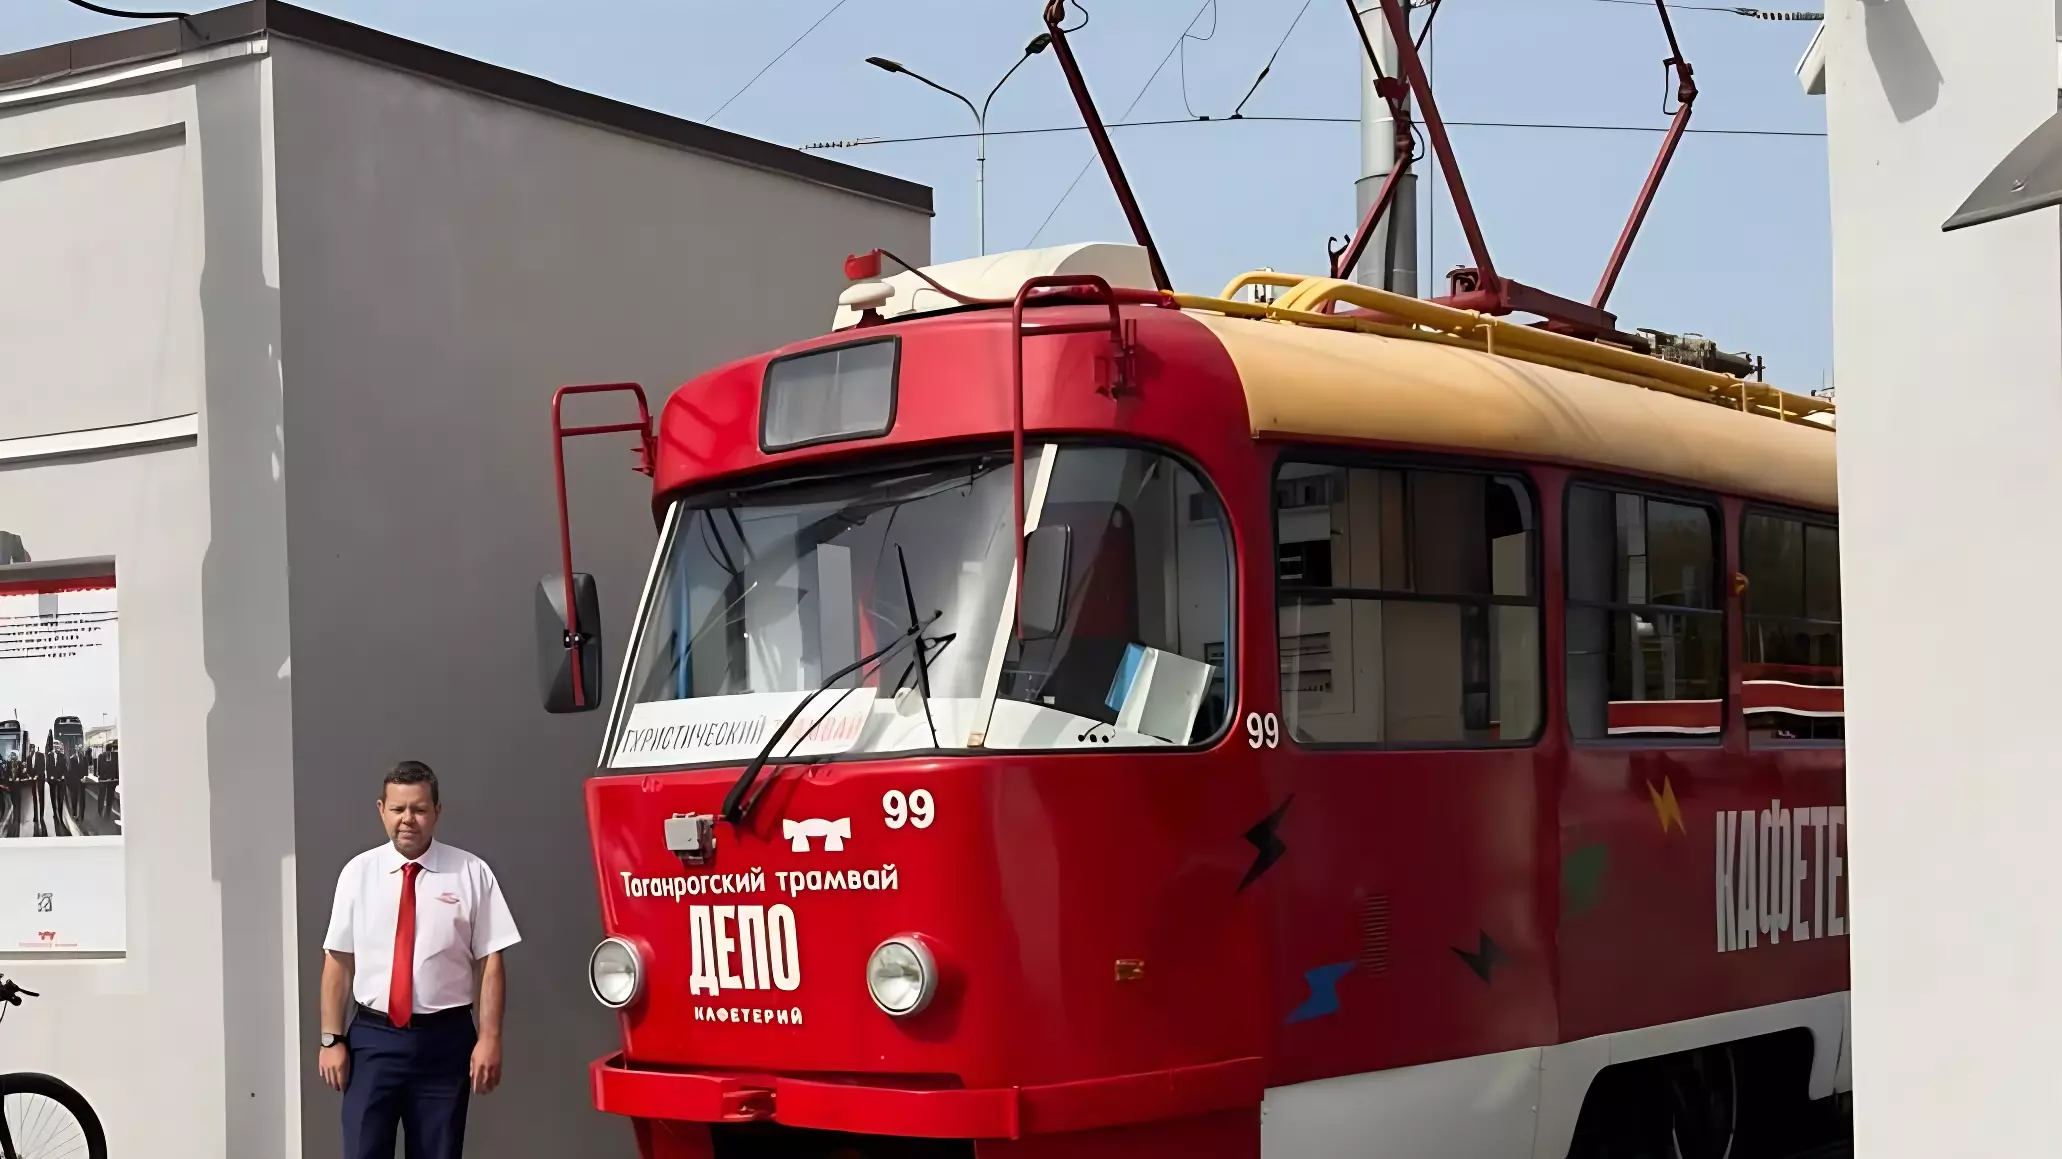 Исторические экскурсии организовали в туристическом трамвае Таганрога